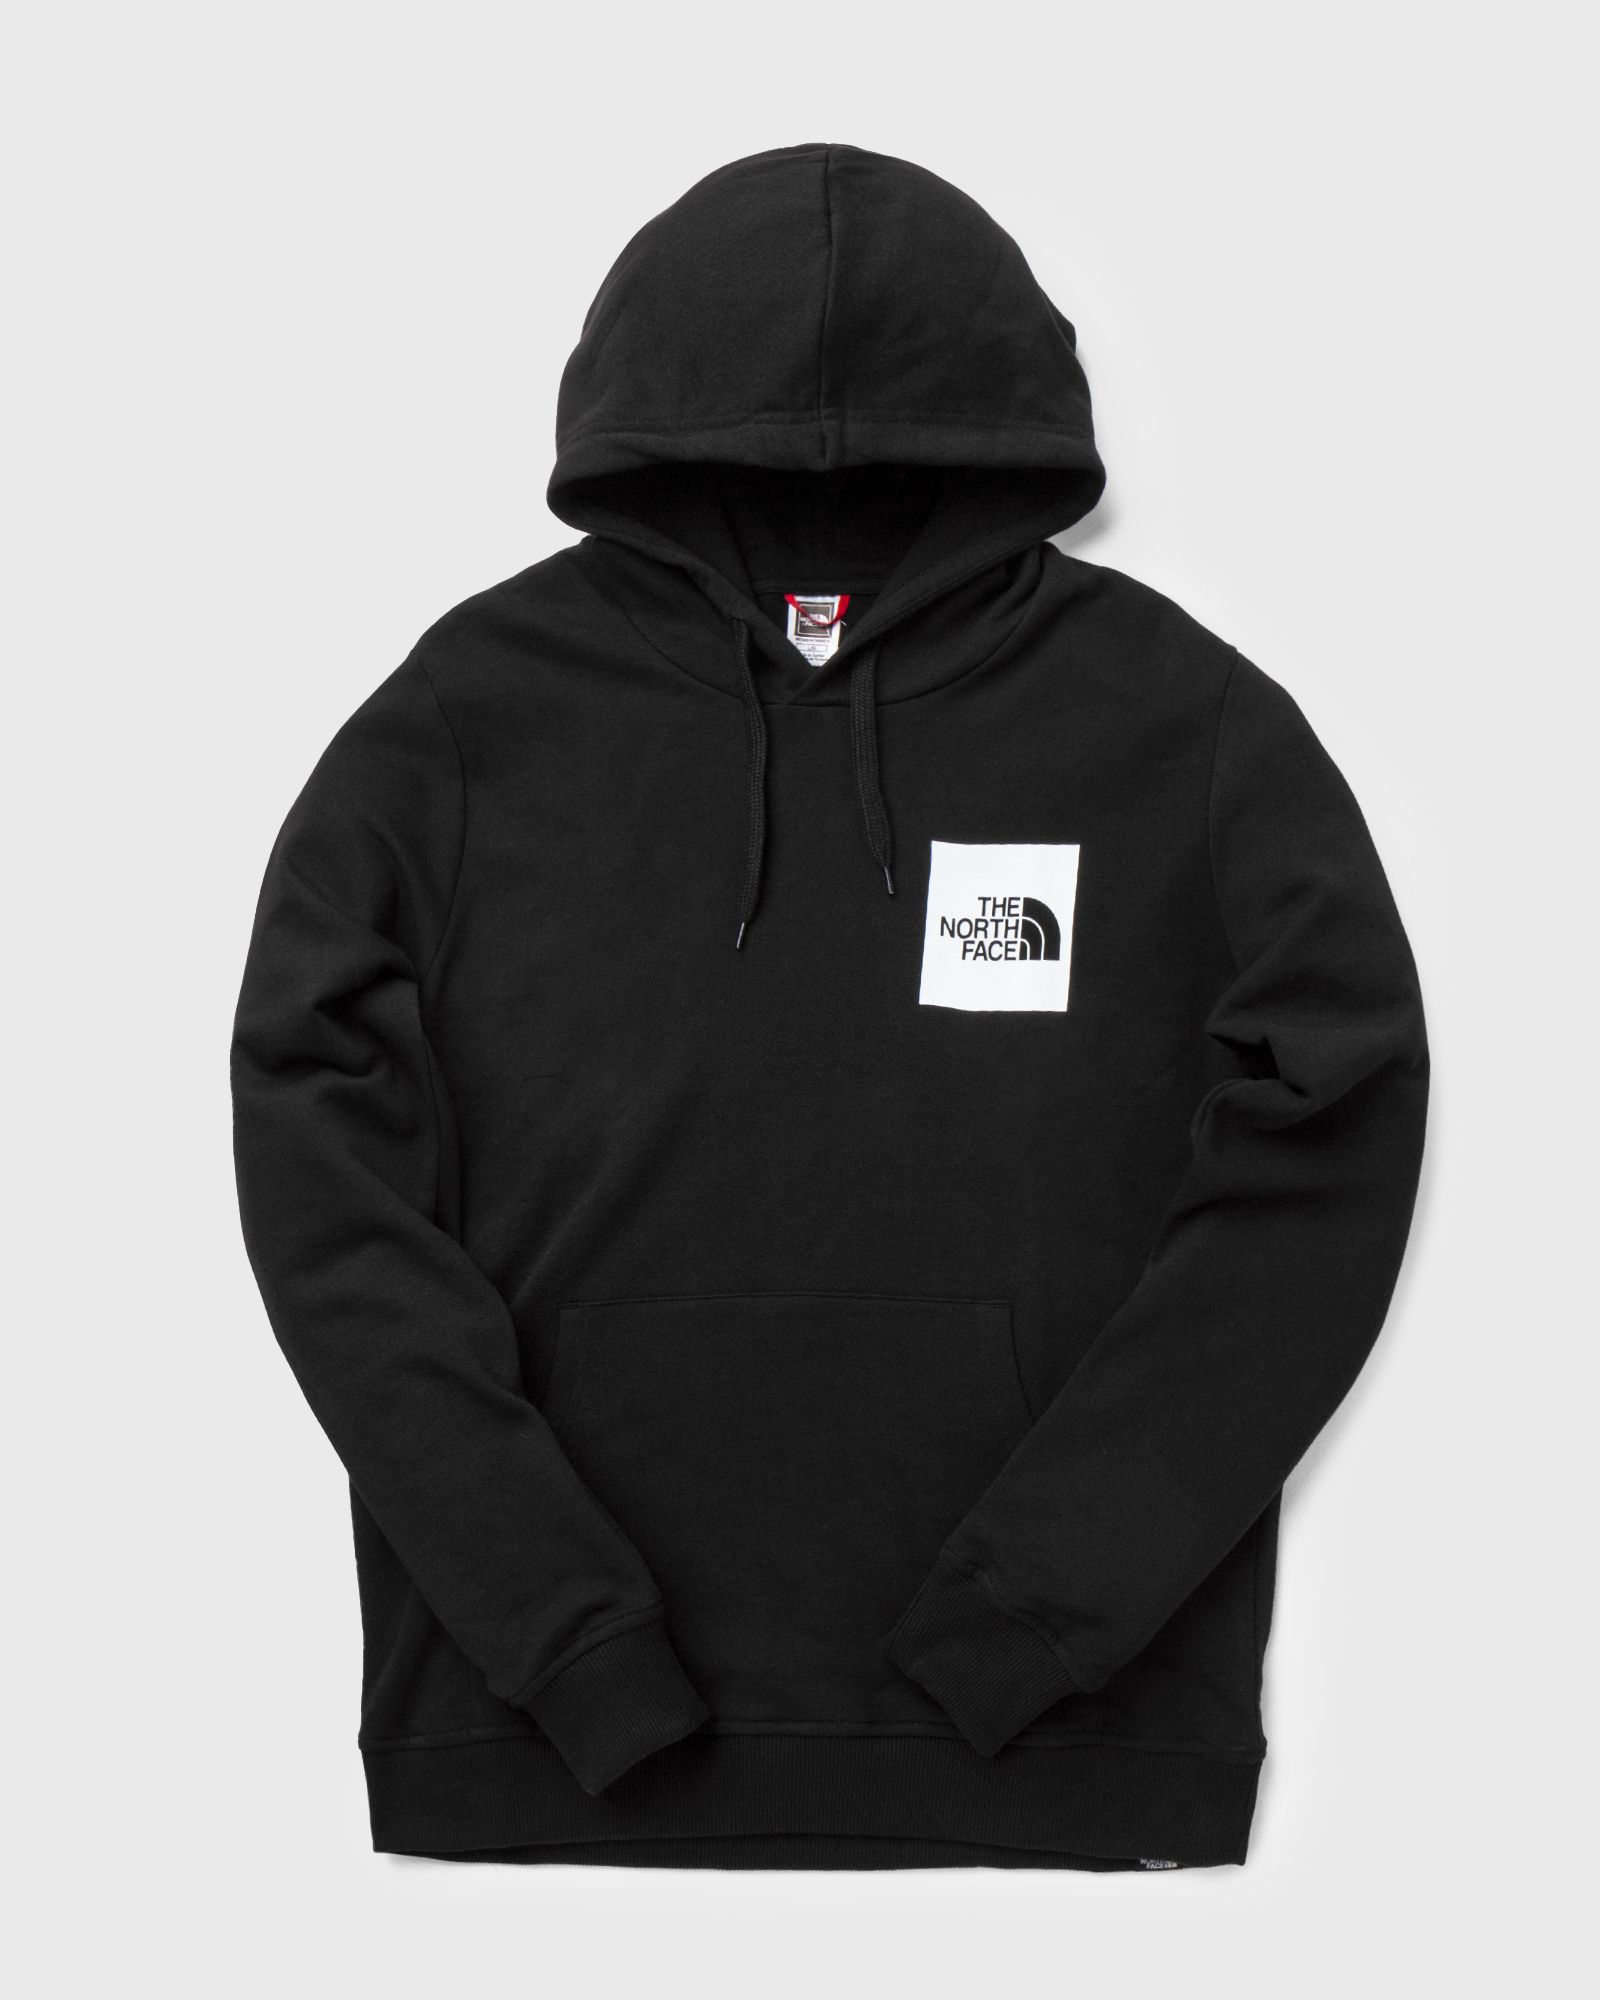 The North Face - fine hoodie men hoodies black in größe:l